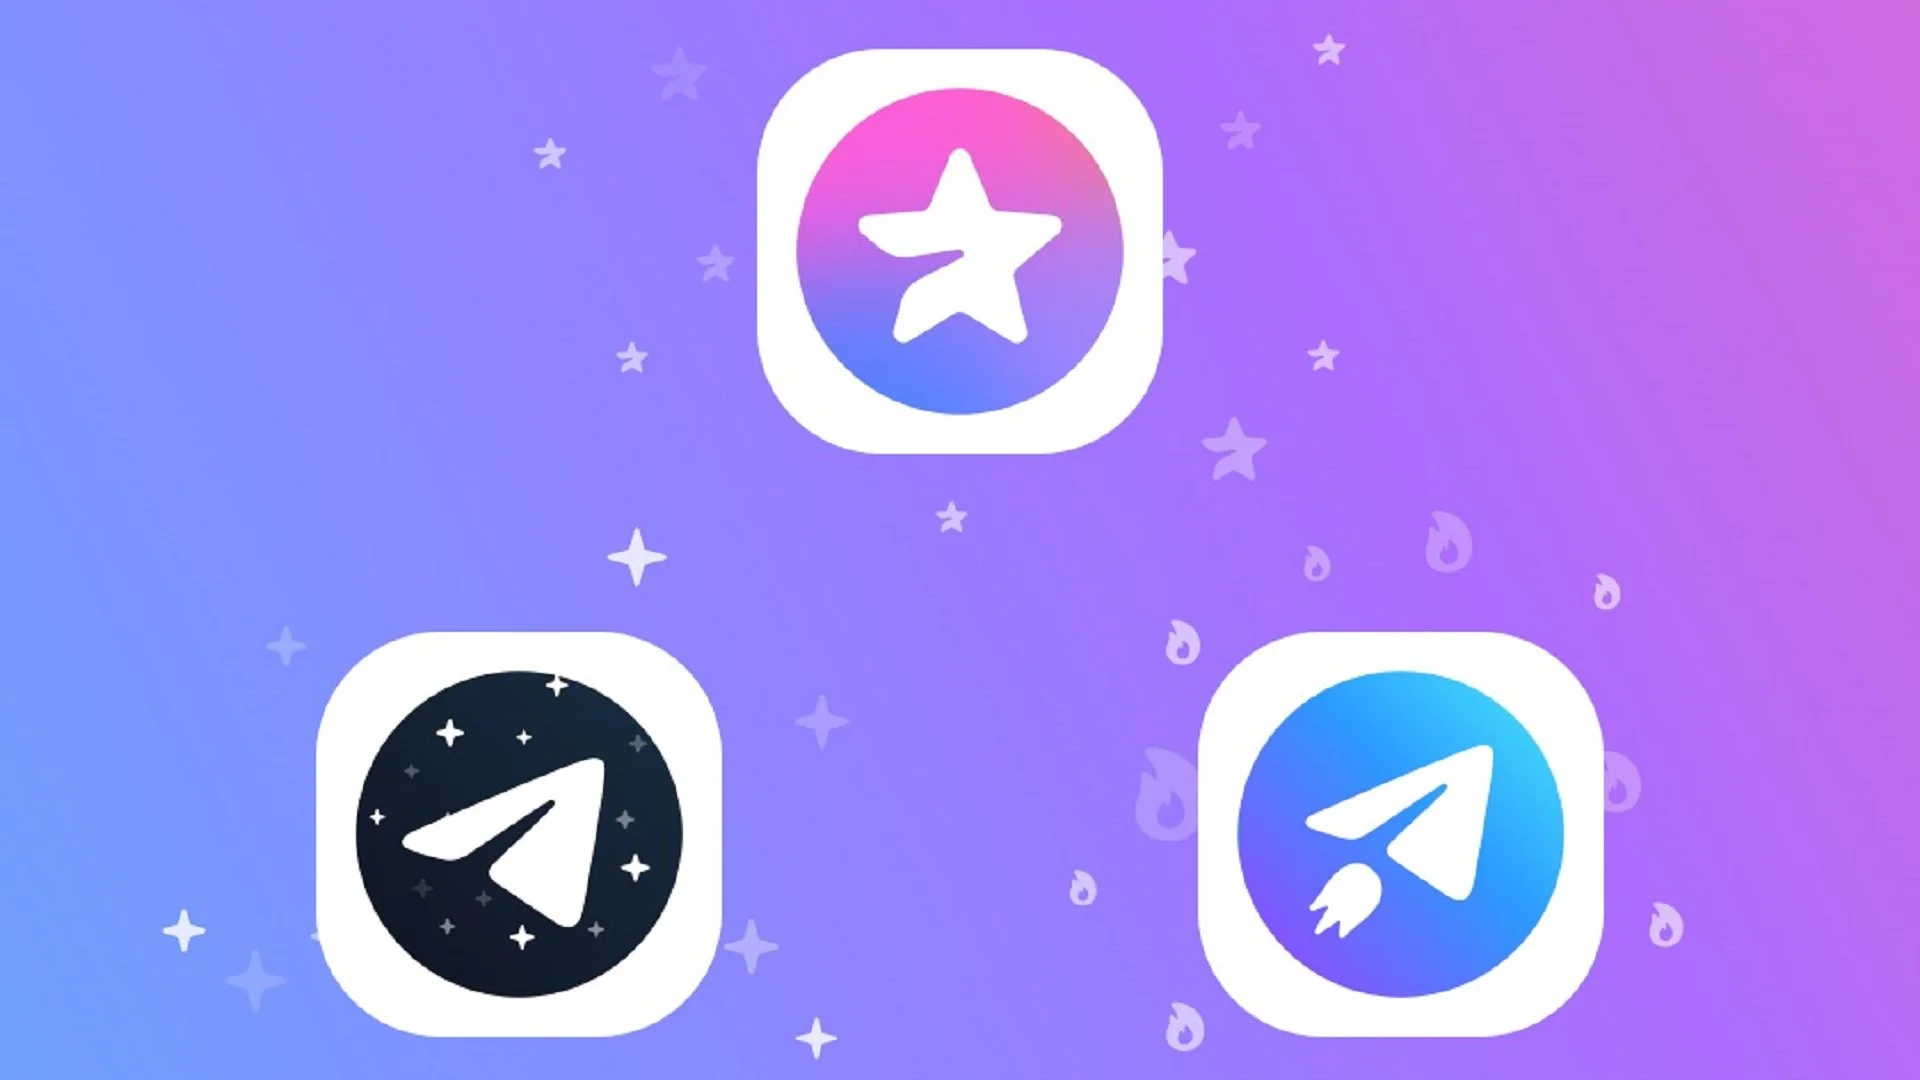 Aplikasi percakapan Telegram resmi meluncurkan versi berbayar, Telegram Premium, per Minggu 19 Juni 2022. Ada banyak fitur menarik yang baru. (Foto: Telegram)